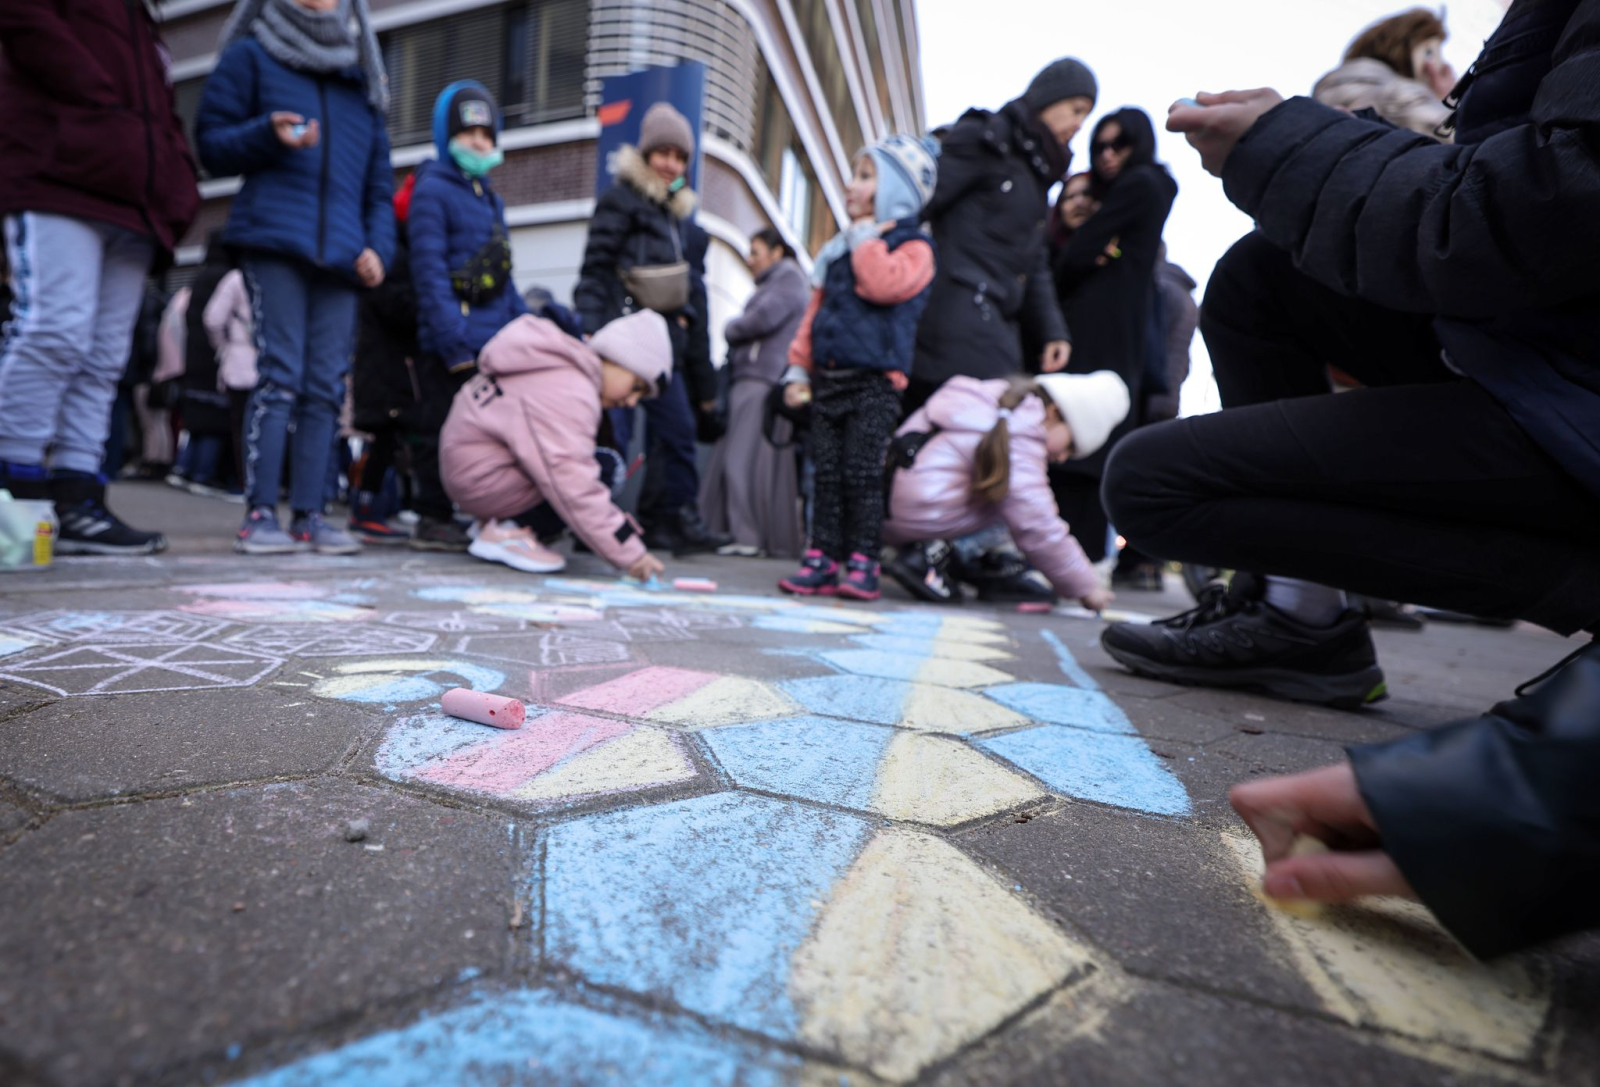 Kinder, die mit ihren Angehörigen nach deutschland geflohen sind, malen mit Kreide auf den Boden.